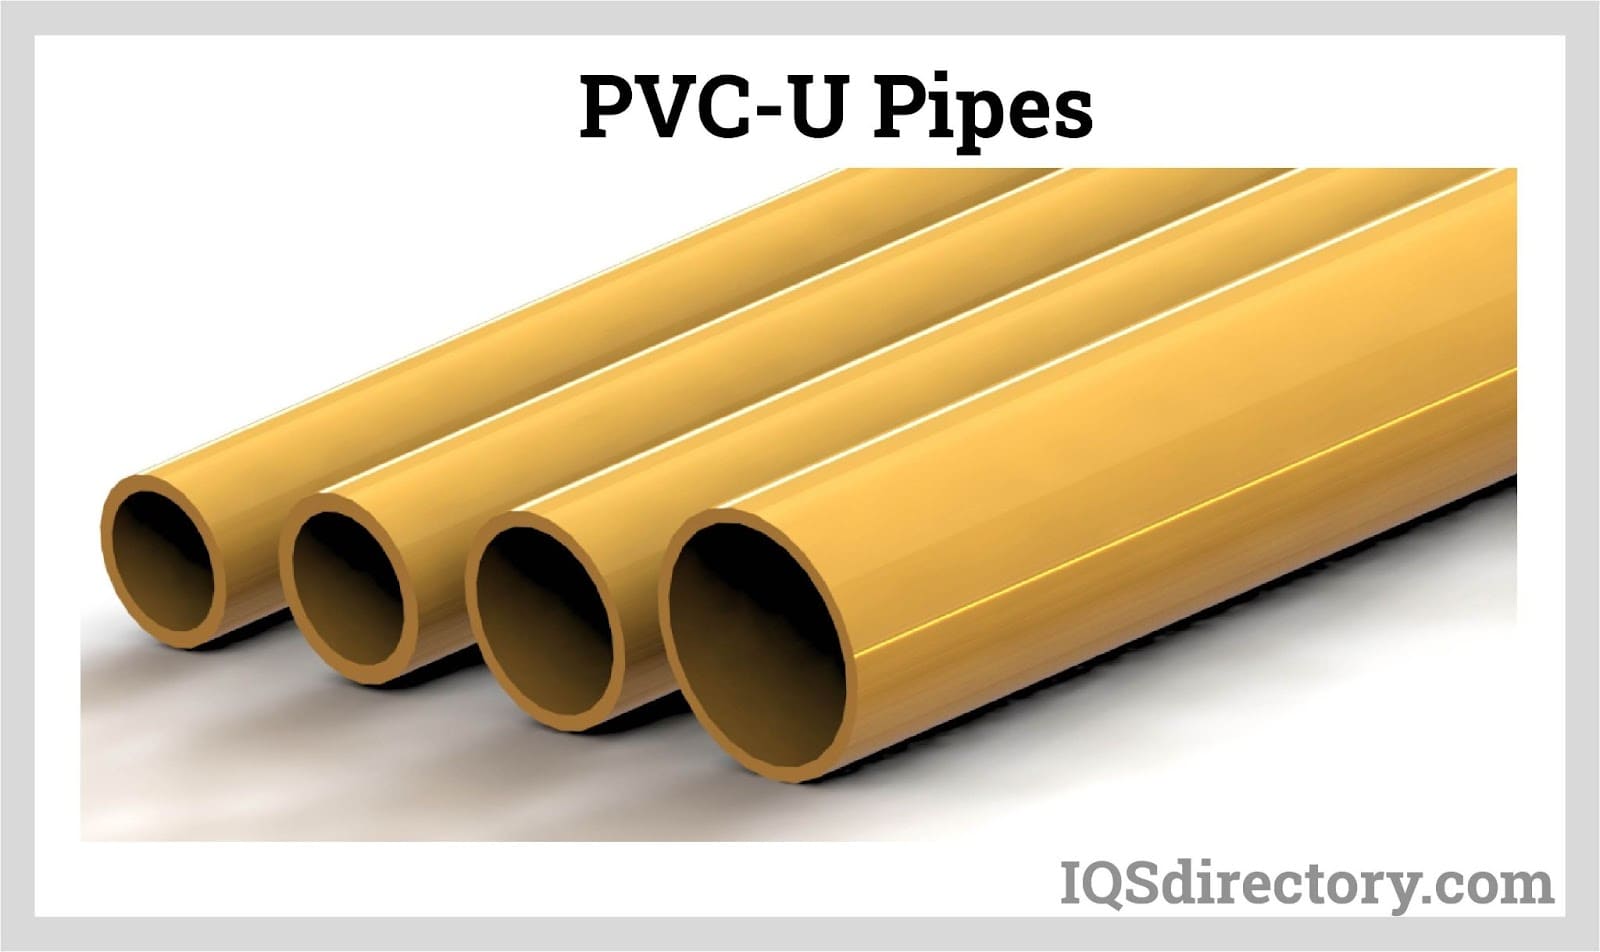 PVC-U Pipes